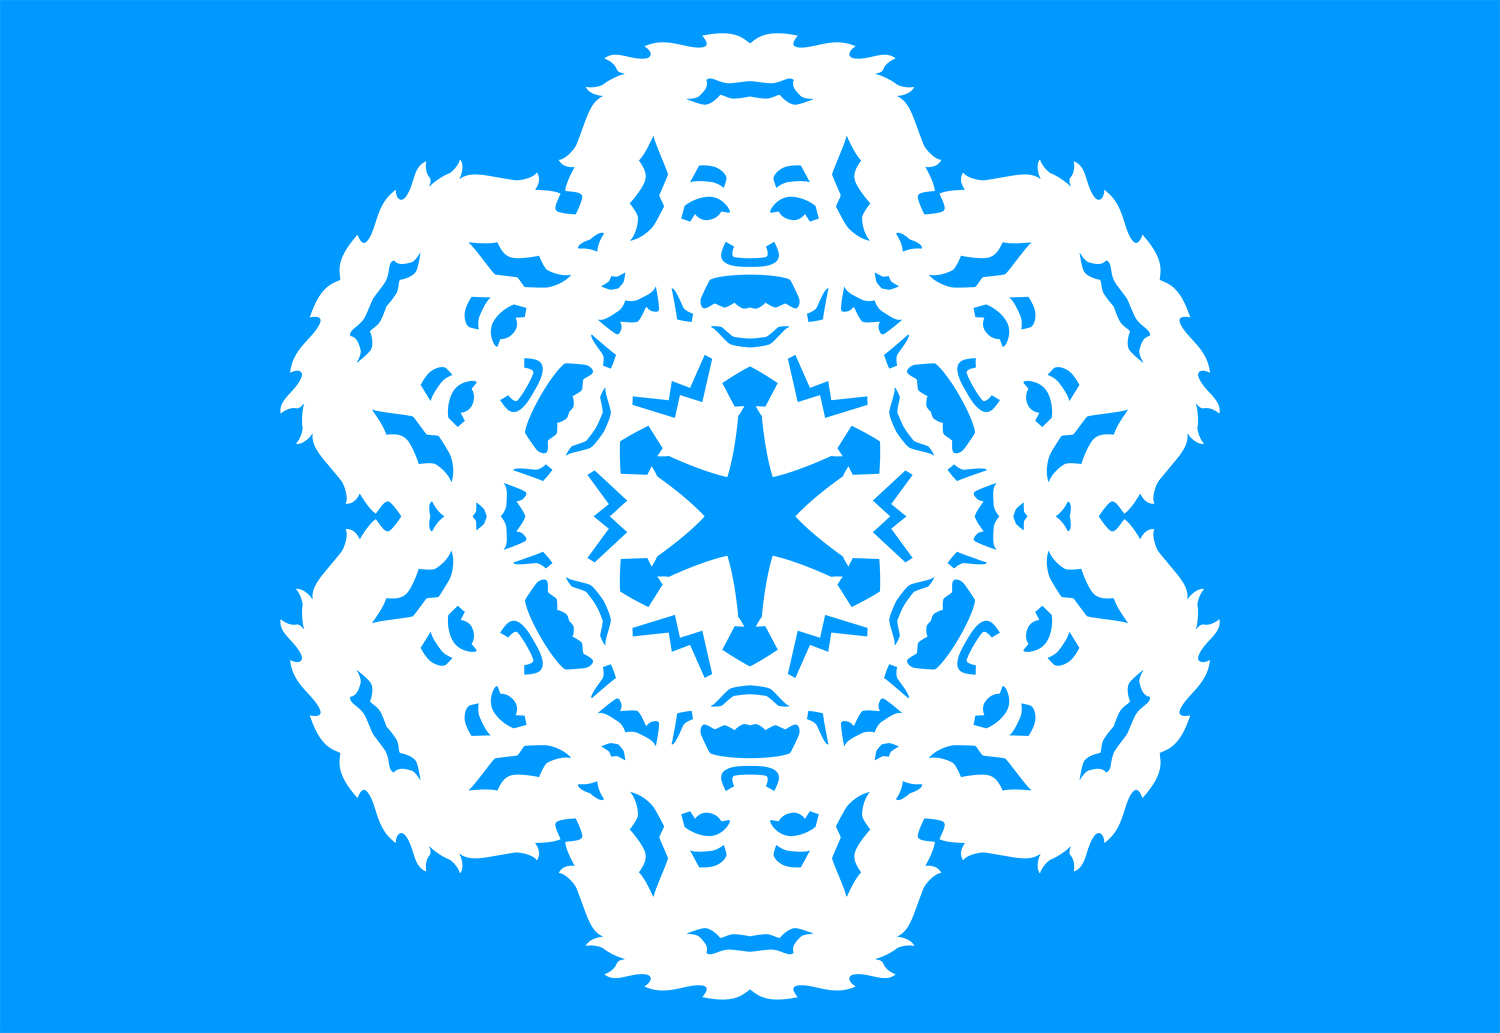 Albert Einstein Snowflake Design